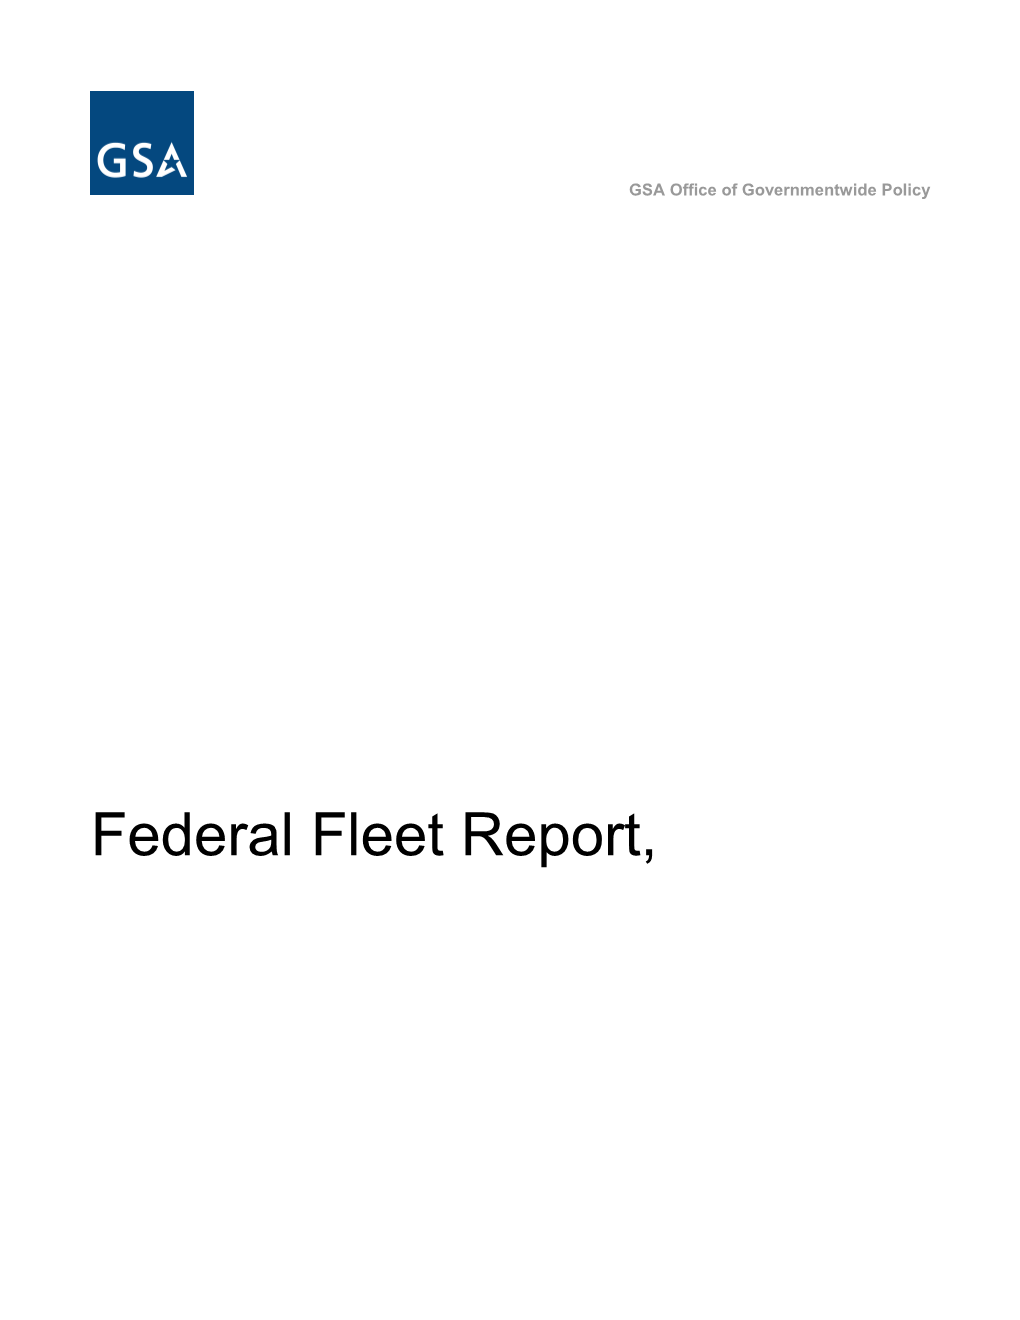 Federal Fleet Report